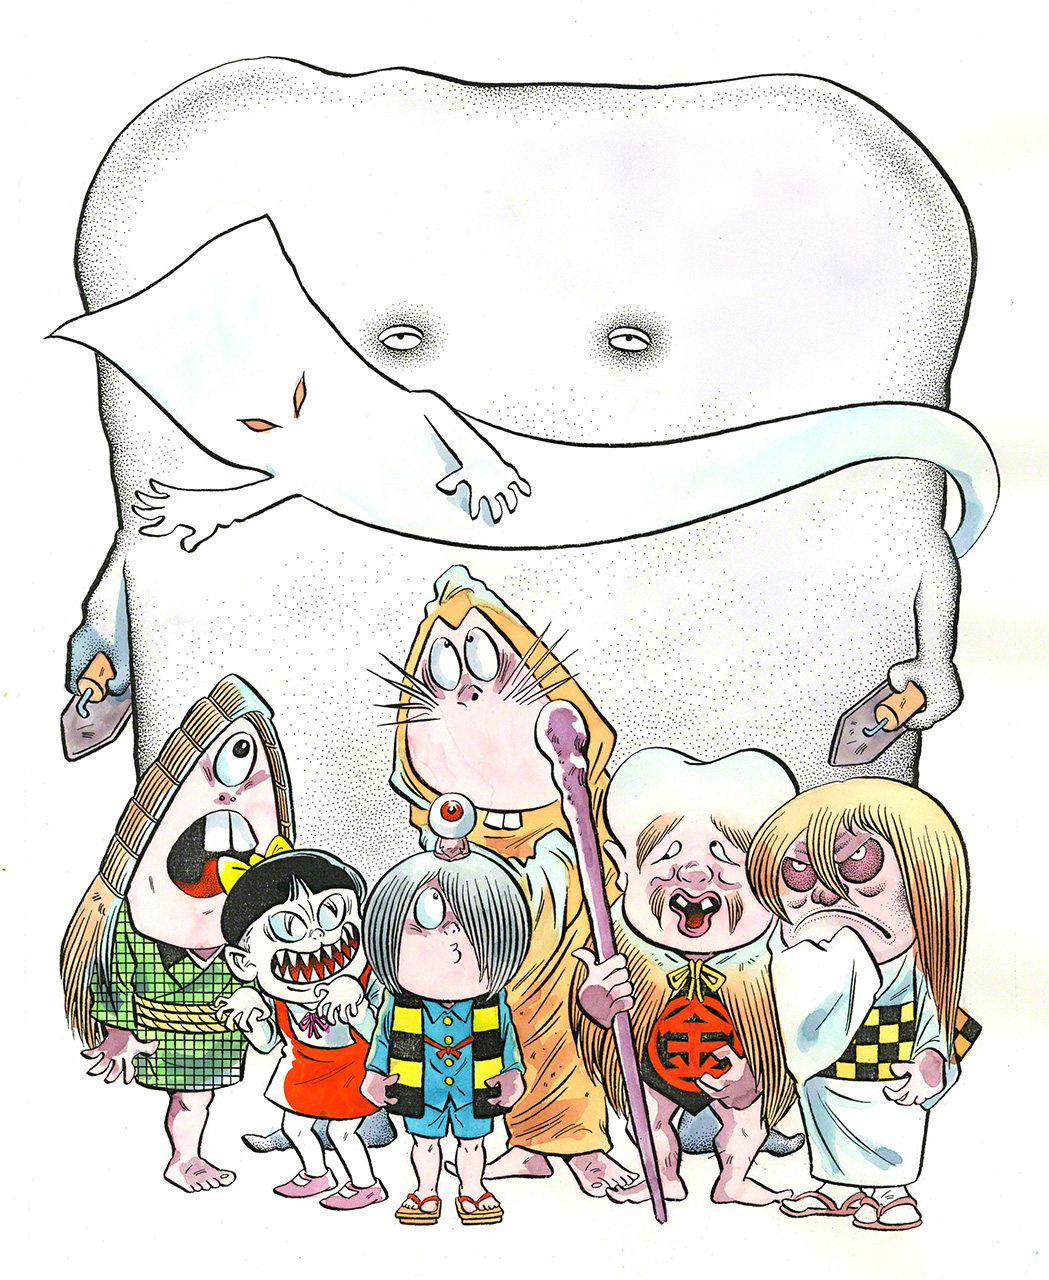  شخصيات اليوكاي في ”غيغيغي نو كيتارو“ التي رسمها ميزوكي شيغيرو. تقديم الصورة: شركة ميزوكي برودكشن (جيجي برس)